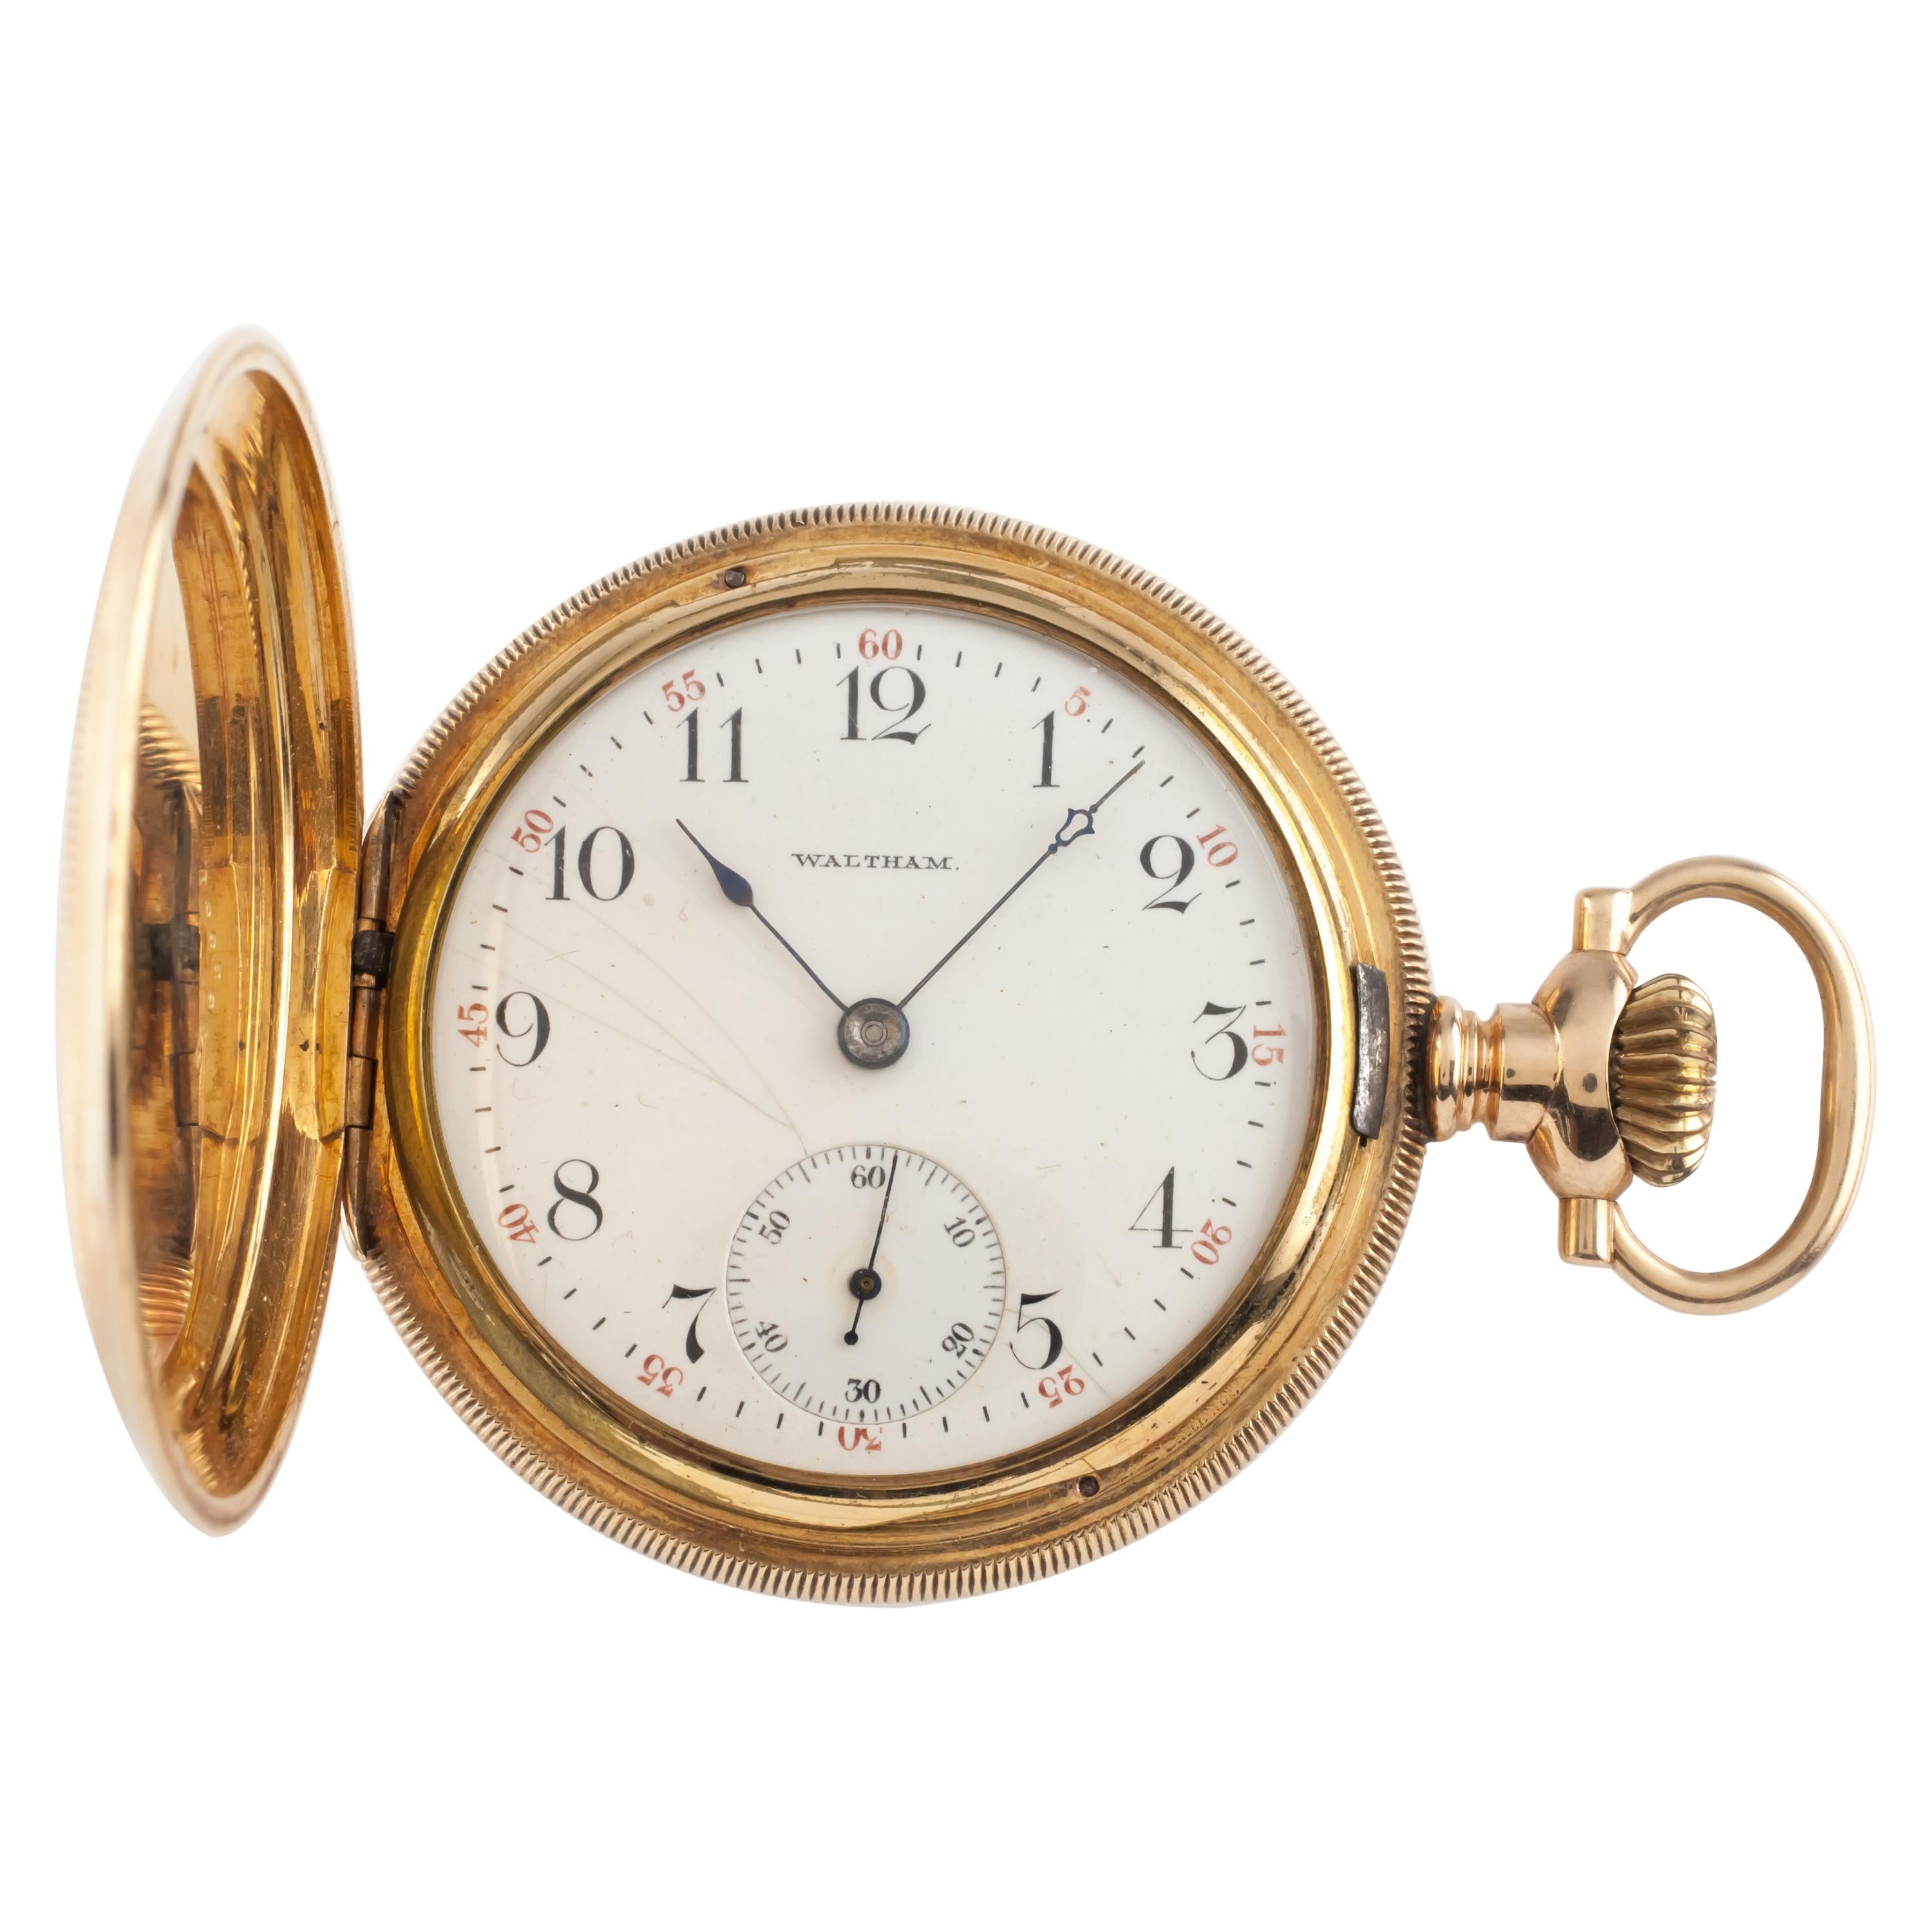 Waltham Full Hunter 14 Karat Gold Antique Pocket Watch Grade 620 15J 16S 1899